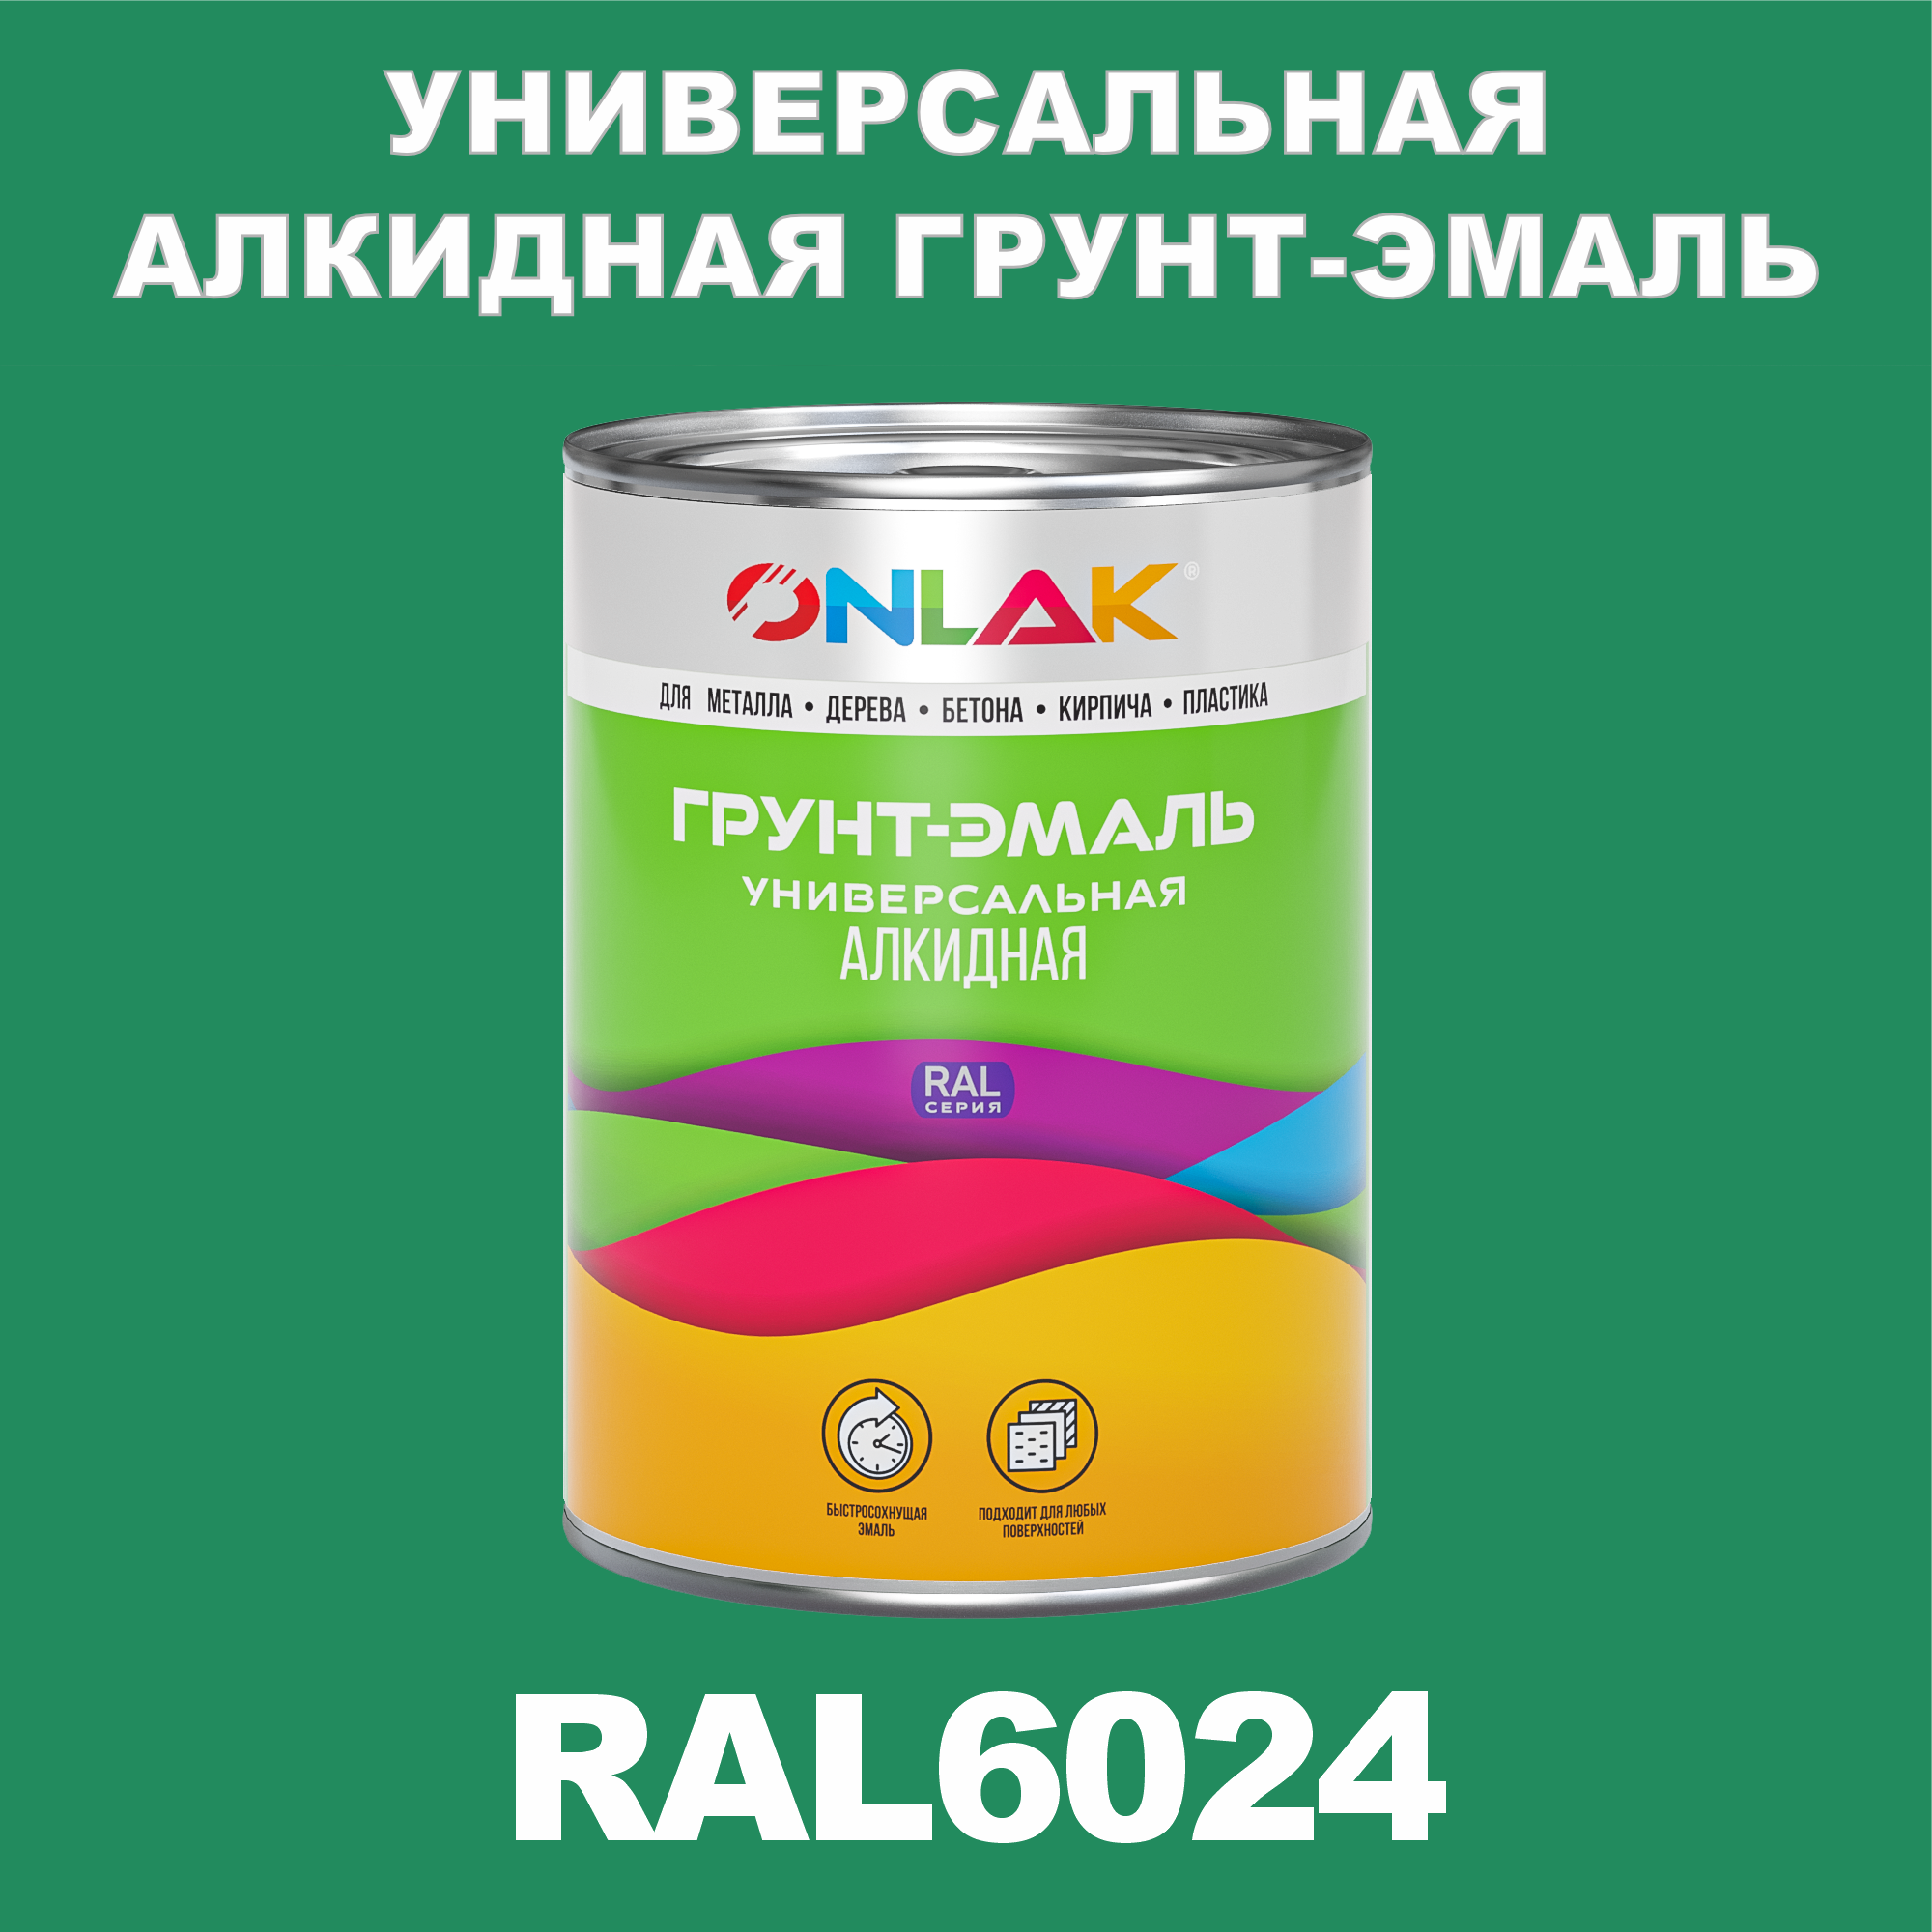 Грунт-эмаль ONLAK 1К RAL6024 антикоррозионная алкидная по металлу по ржавчине 1 кг грунт эмаль skladno по ржавчине алкидная желтая 1 8 кг